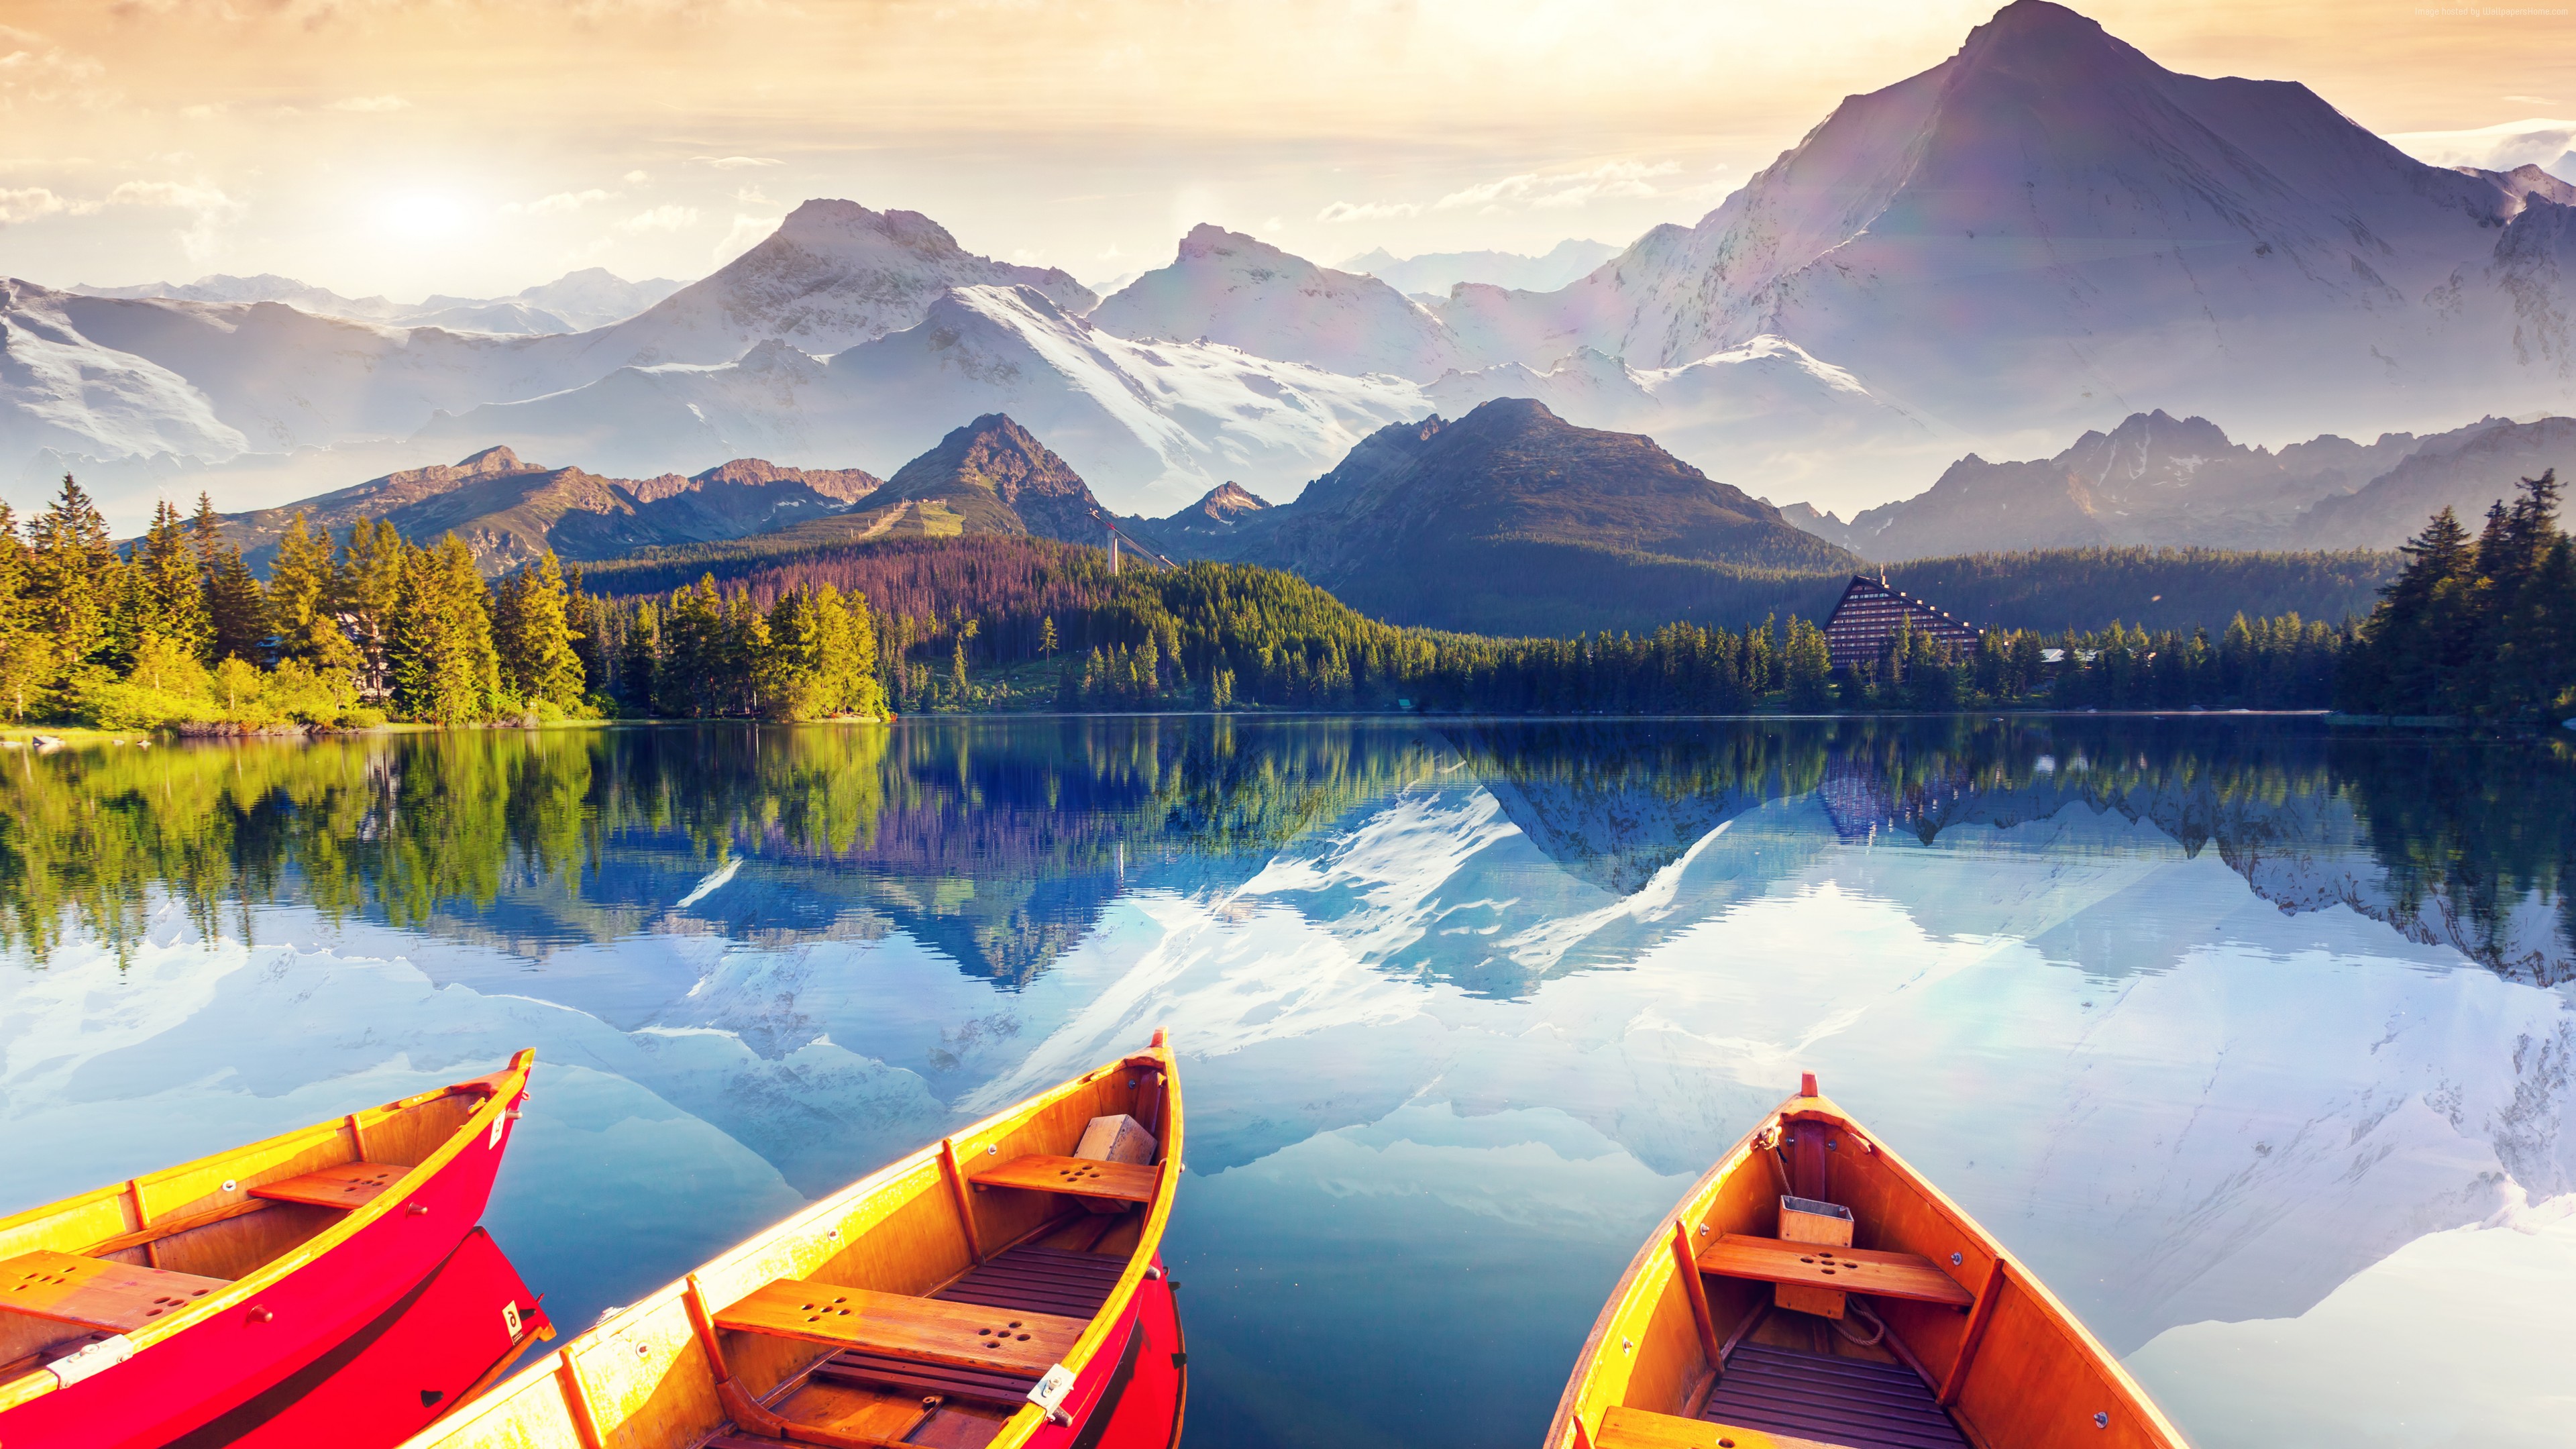 Wallpaper Lake, Boat, Sky, Colors, 8k, Nature - Nature 1080p - HD Wallpaper 